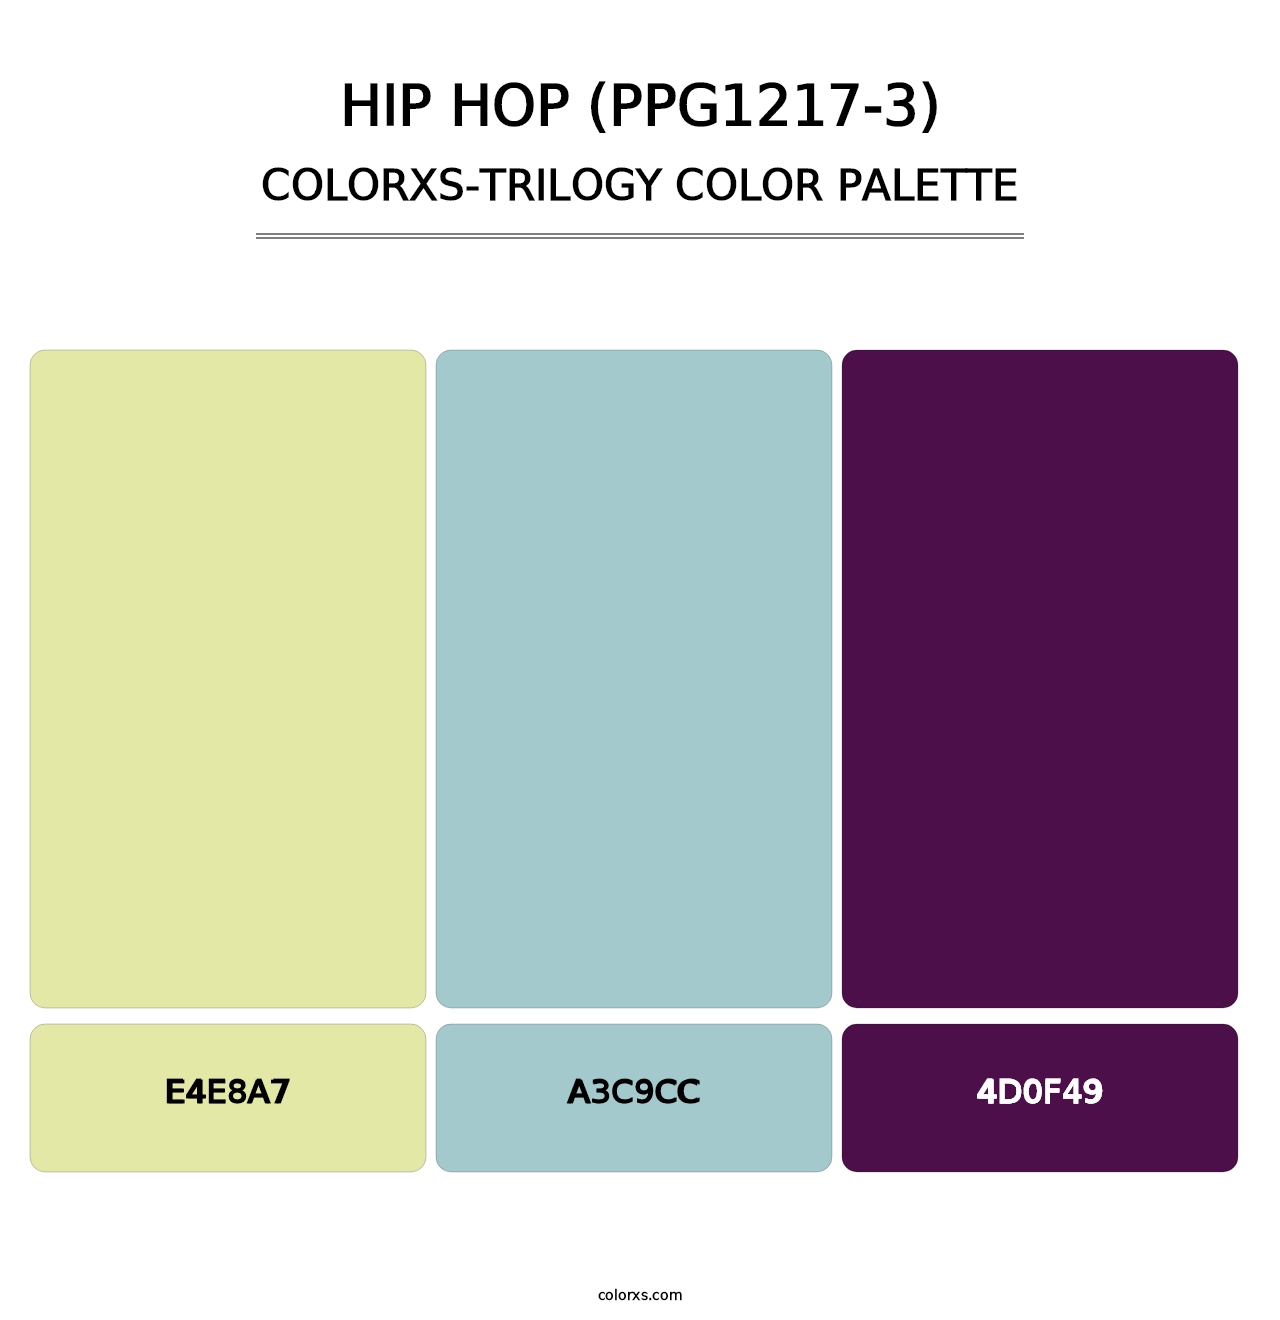 Hip Hop (PPG1217-3) - Colorxs Trilogy Palette